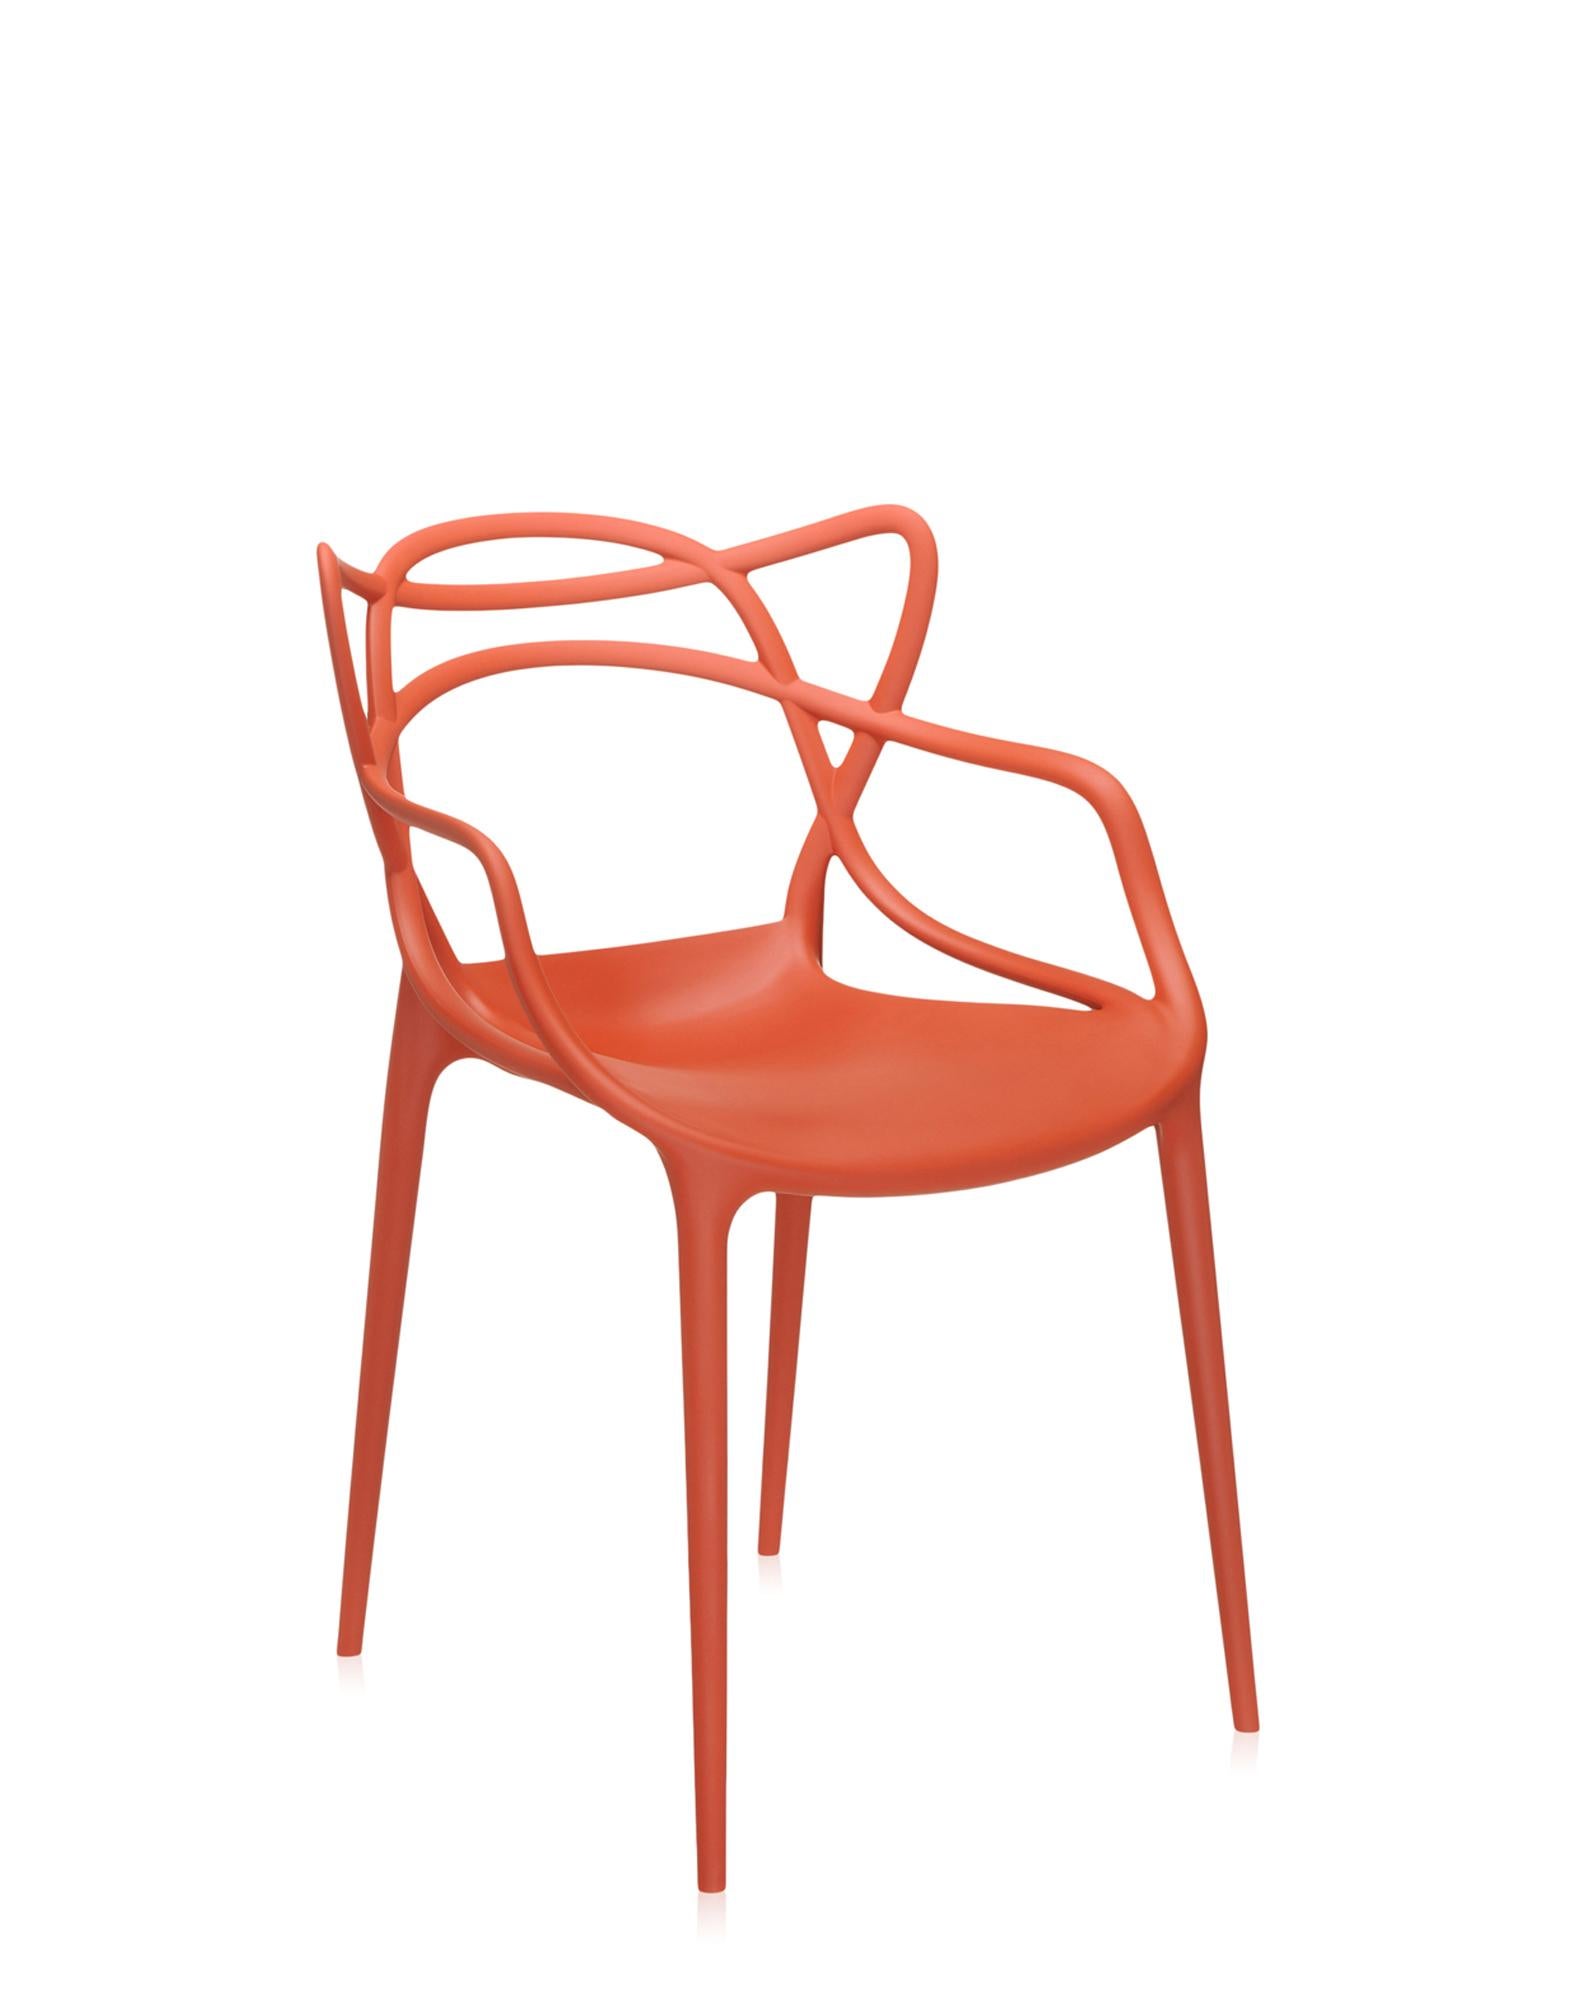 Der Masters Chair ist eine kraftvolle Hommage an drei symbolträchtige Stühle, die vom kreativen Genie Starcks neu gelesen und interpretiert wurden. Die unverwechselbaren Silhouetten der Serie 7 von Arne Jacobsen, des Tulip Armchair von Eero Saarinen